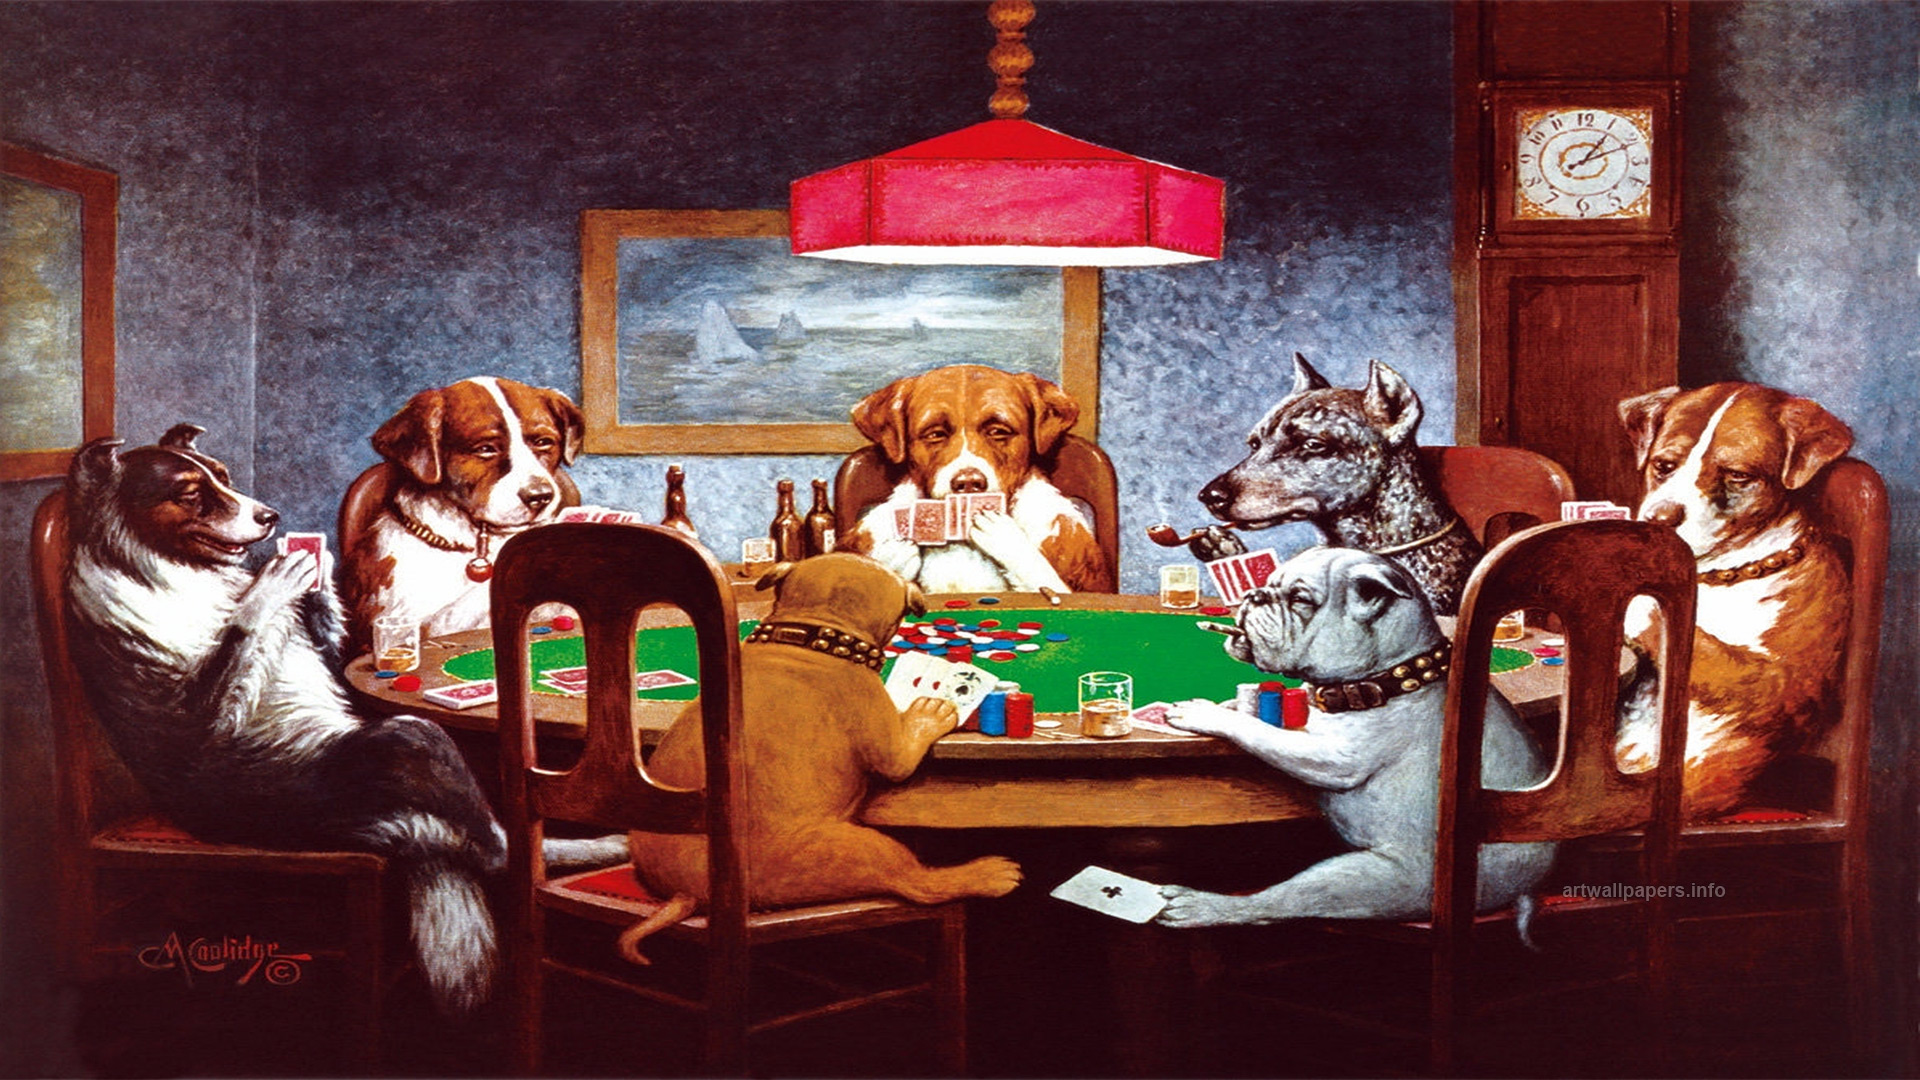 70+] Dogs Playing Poker Wallpaper - WallpaperSafari